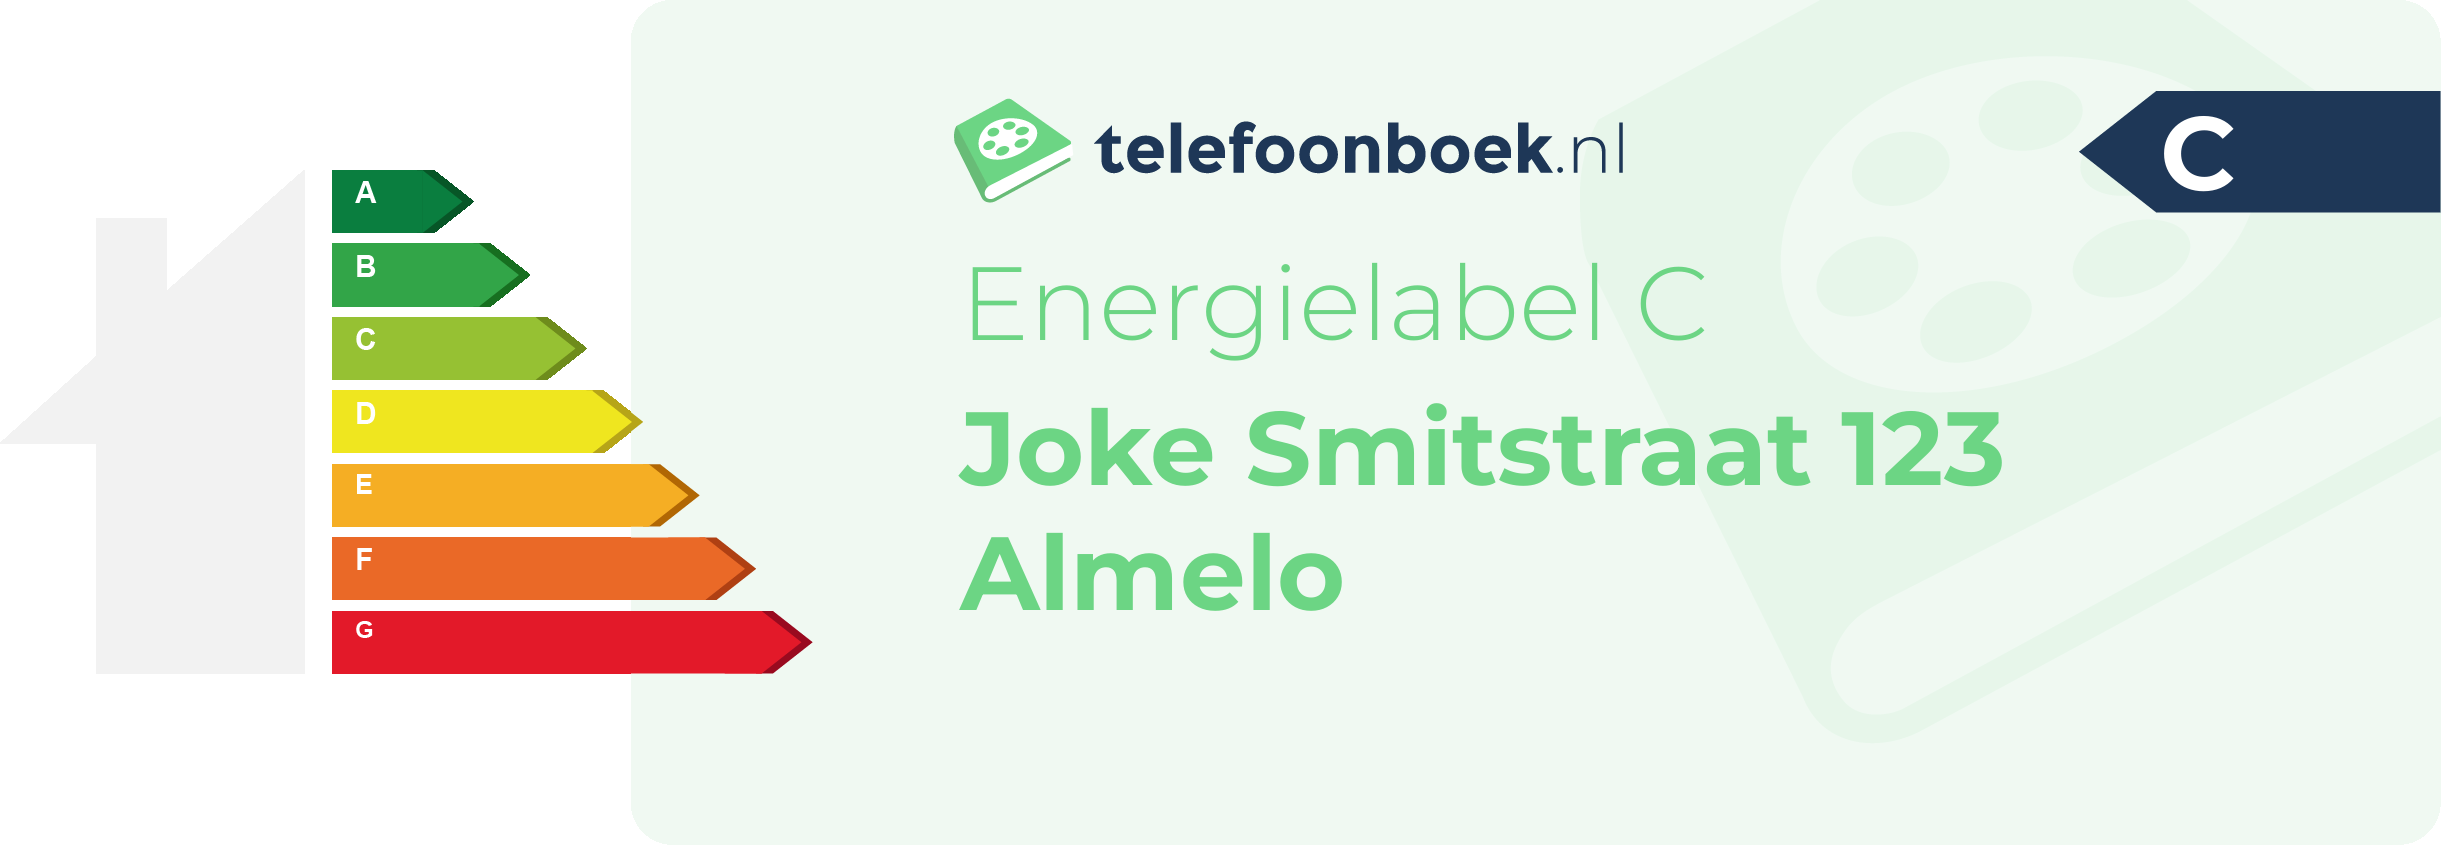 Energielabel Joke Smitstraat 123 Almelo